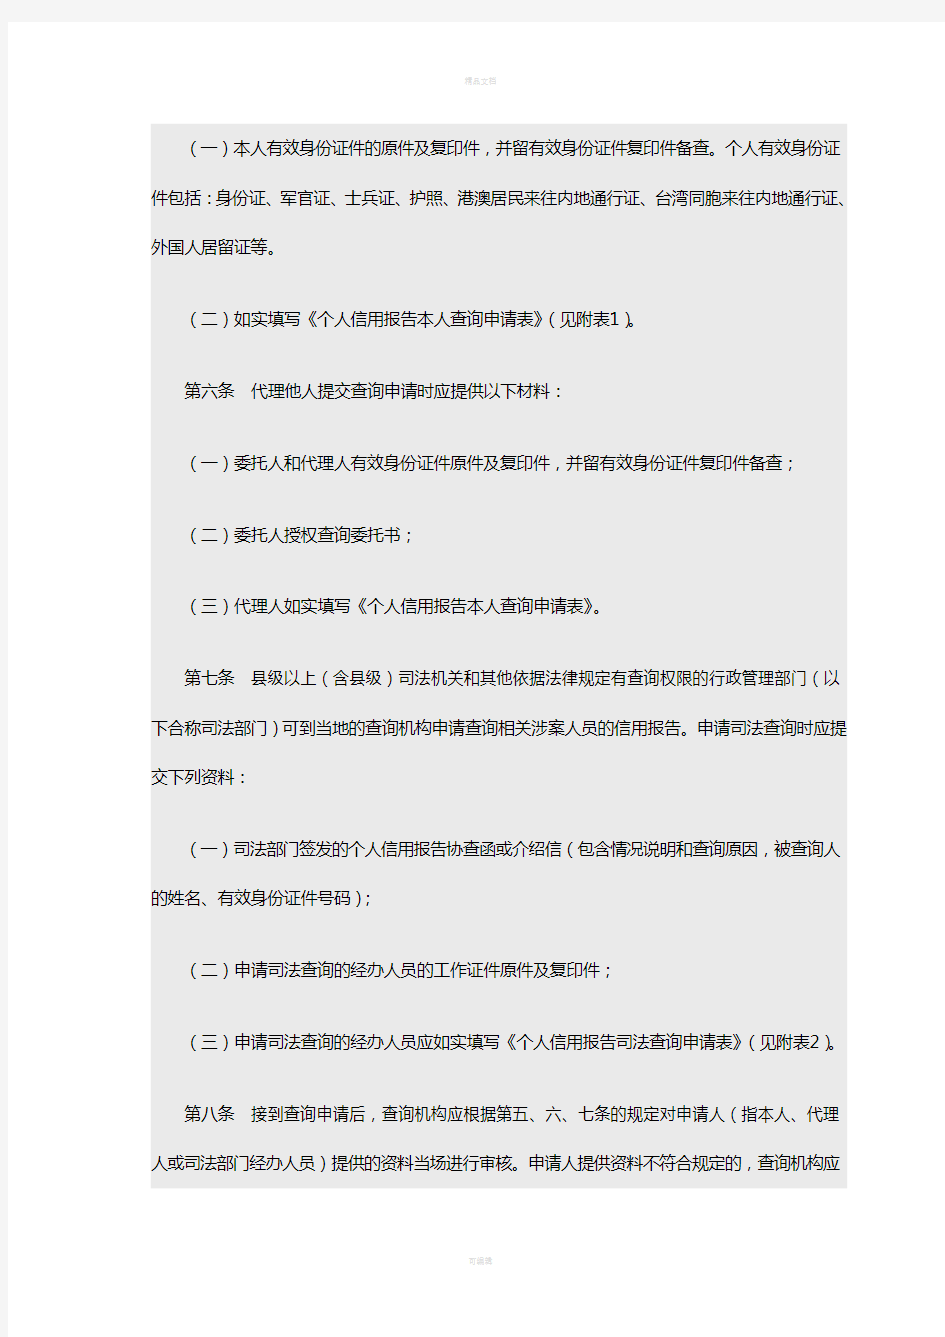 中国人民银行——个人信用报告查询业务操作规程(1)